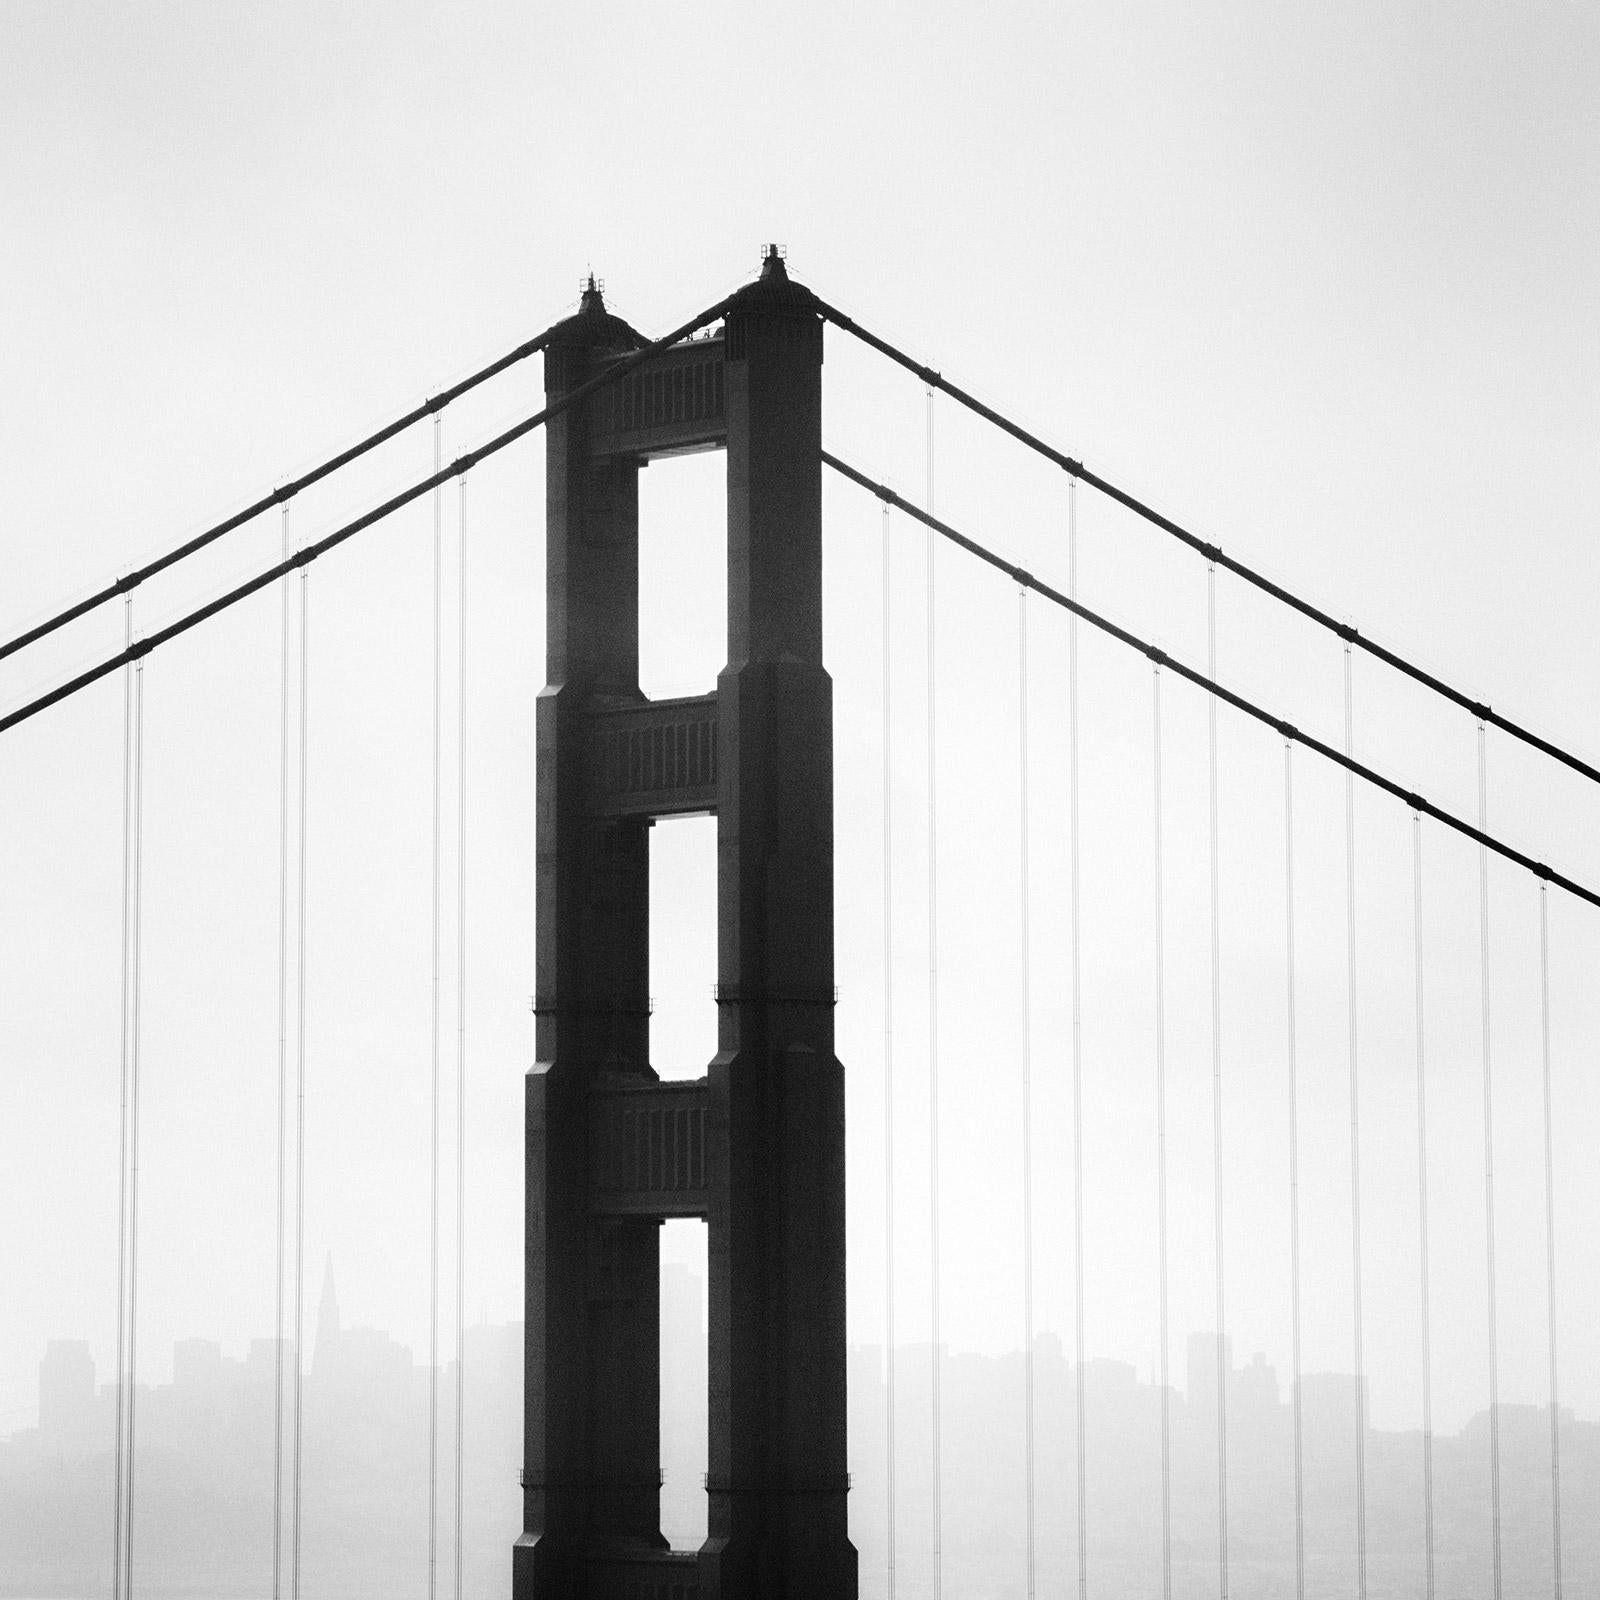 Gerald Berghammer Landscape Photograph – Golden Gate Bridge, San Francisco, USA, minimalistische schwarz-weiße Landschaft